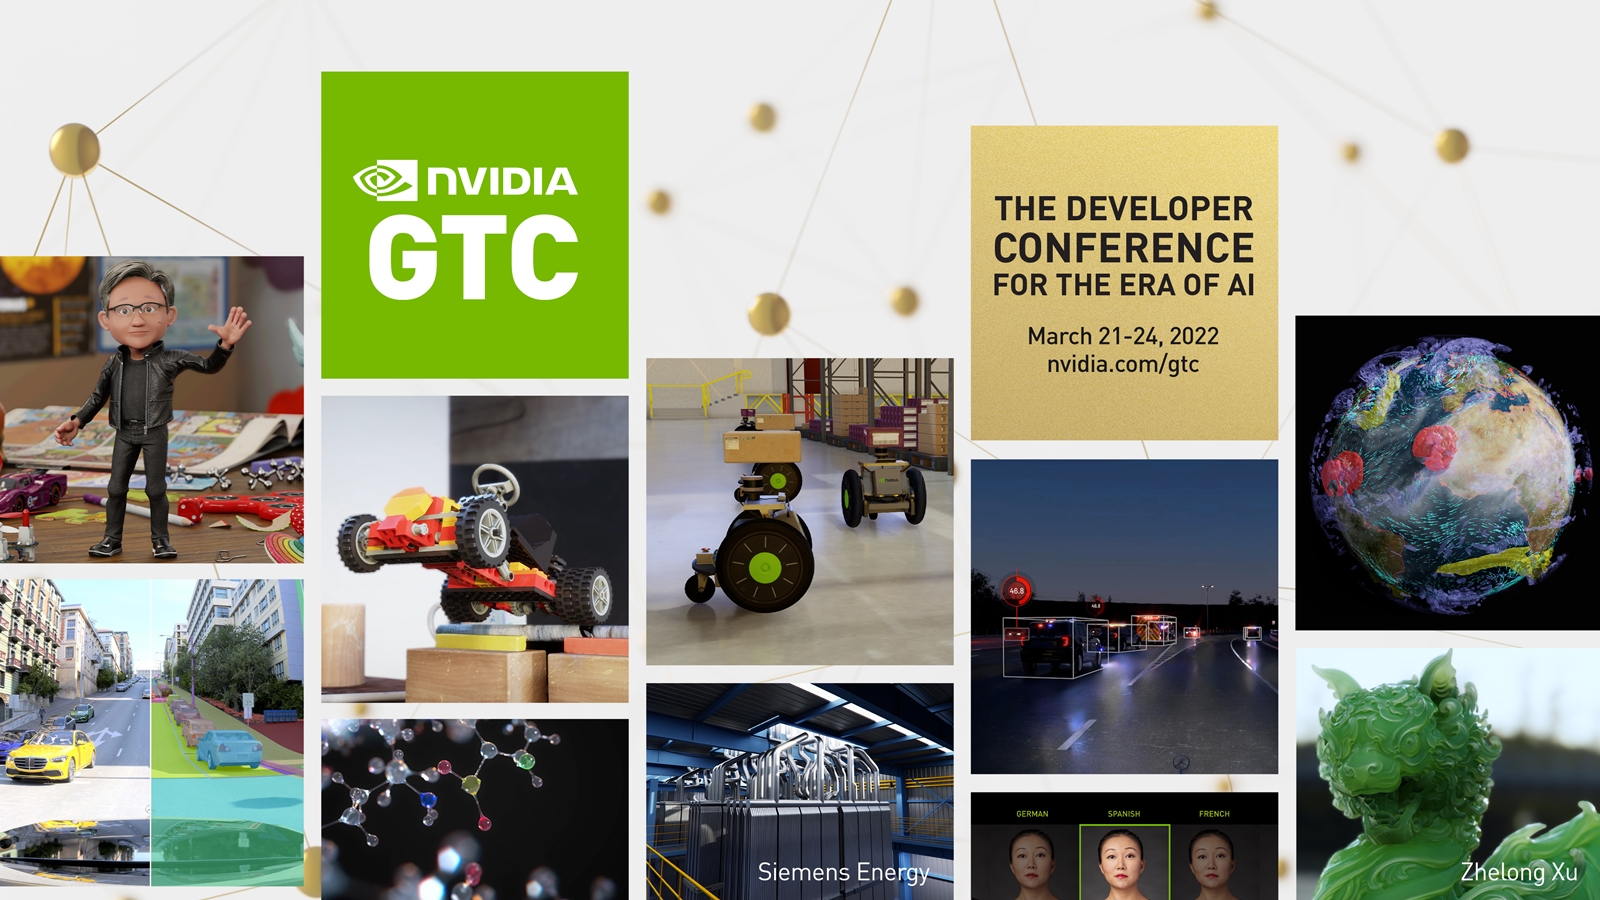 NVIDIA GTC 2022 sẽ khai mạc với bài phát biểu quan trọng từ Giám đốc điều hành Jensen Huang cho các sản phẩm mới cùng hơn 900 phiên thảo luận từ các nhà lãnh đạo trong ngành và AI